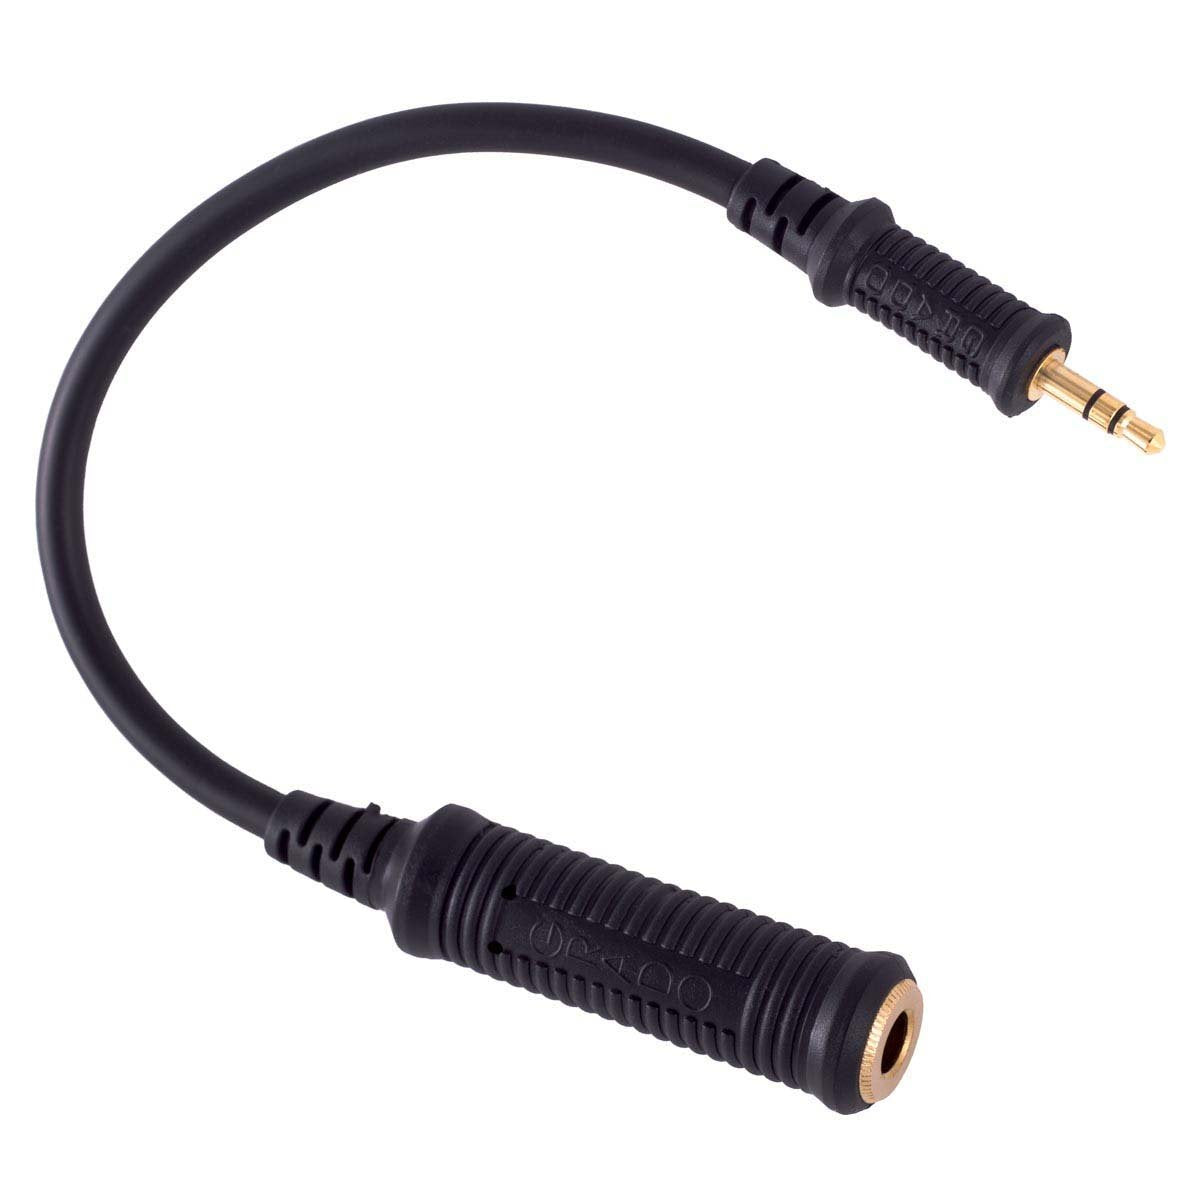 Grado Mini Adaptor Cable (6.35mm to 3.5mm)